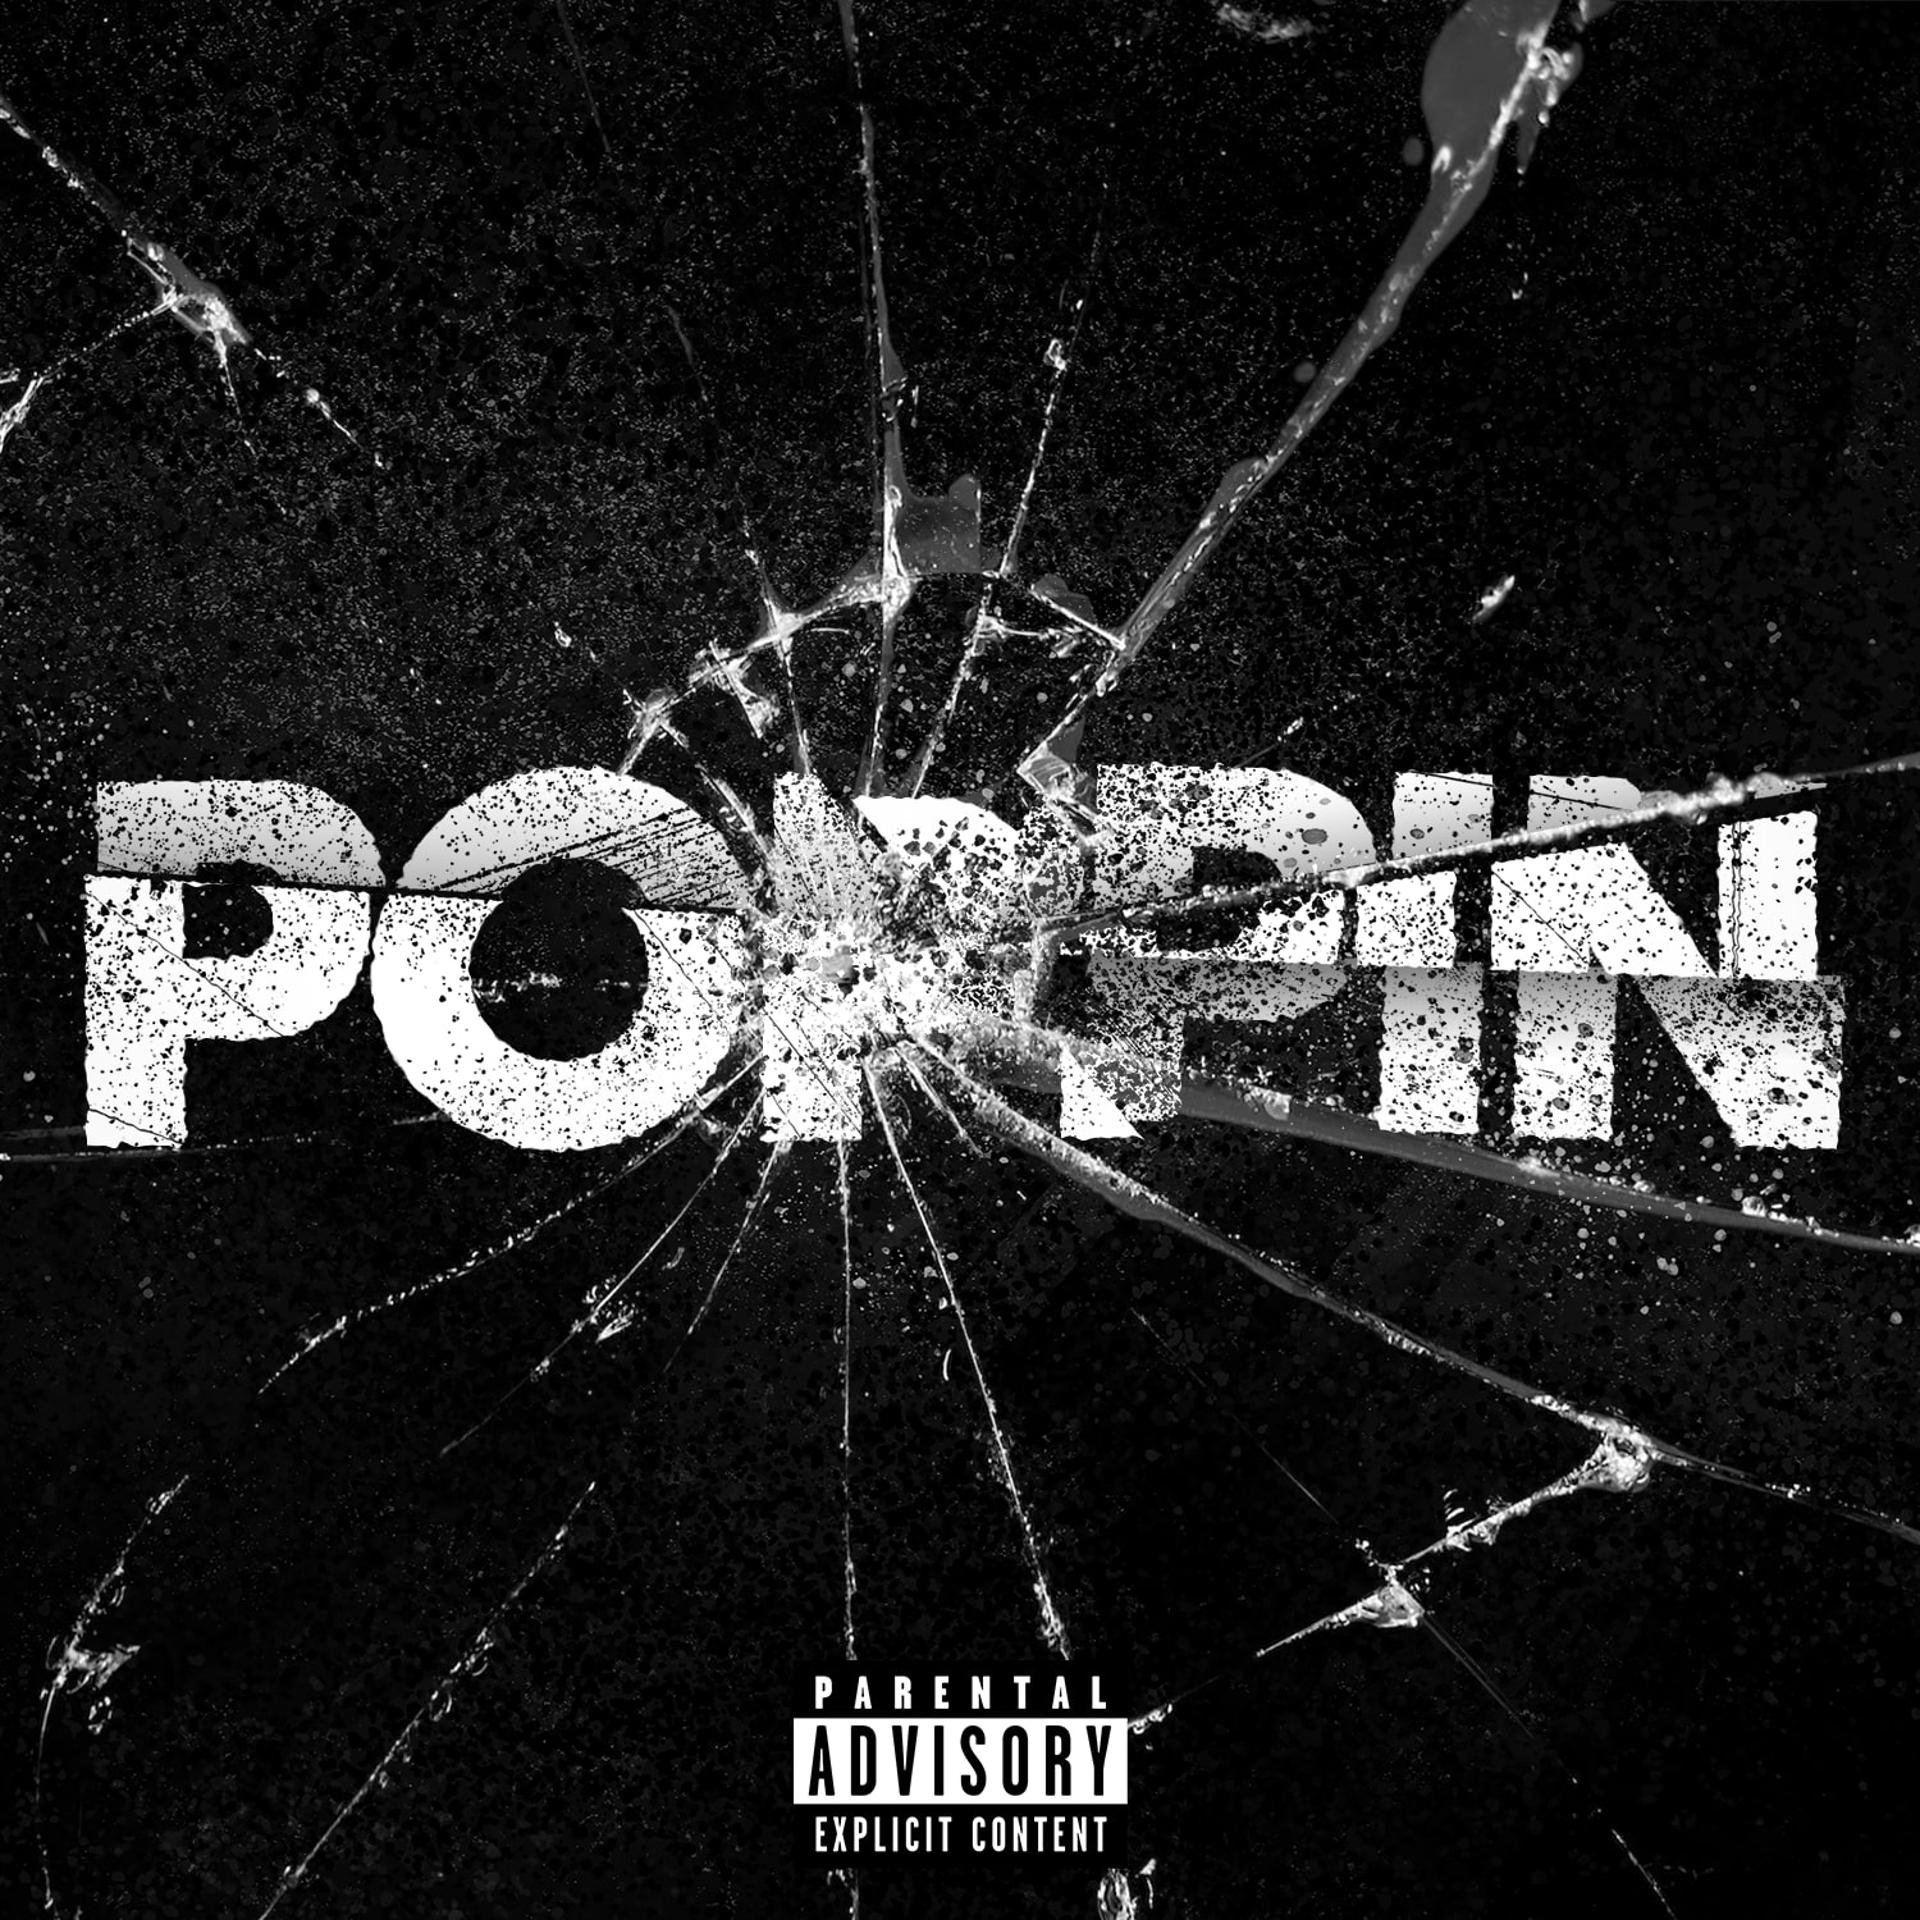 Постер альбома Poppin